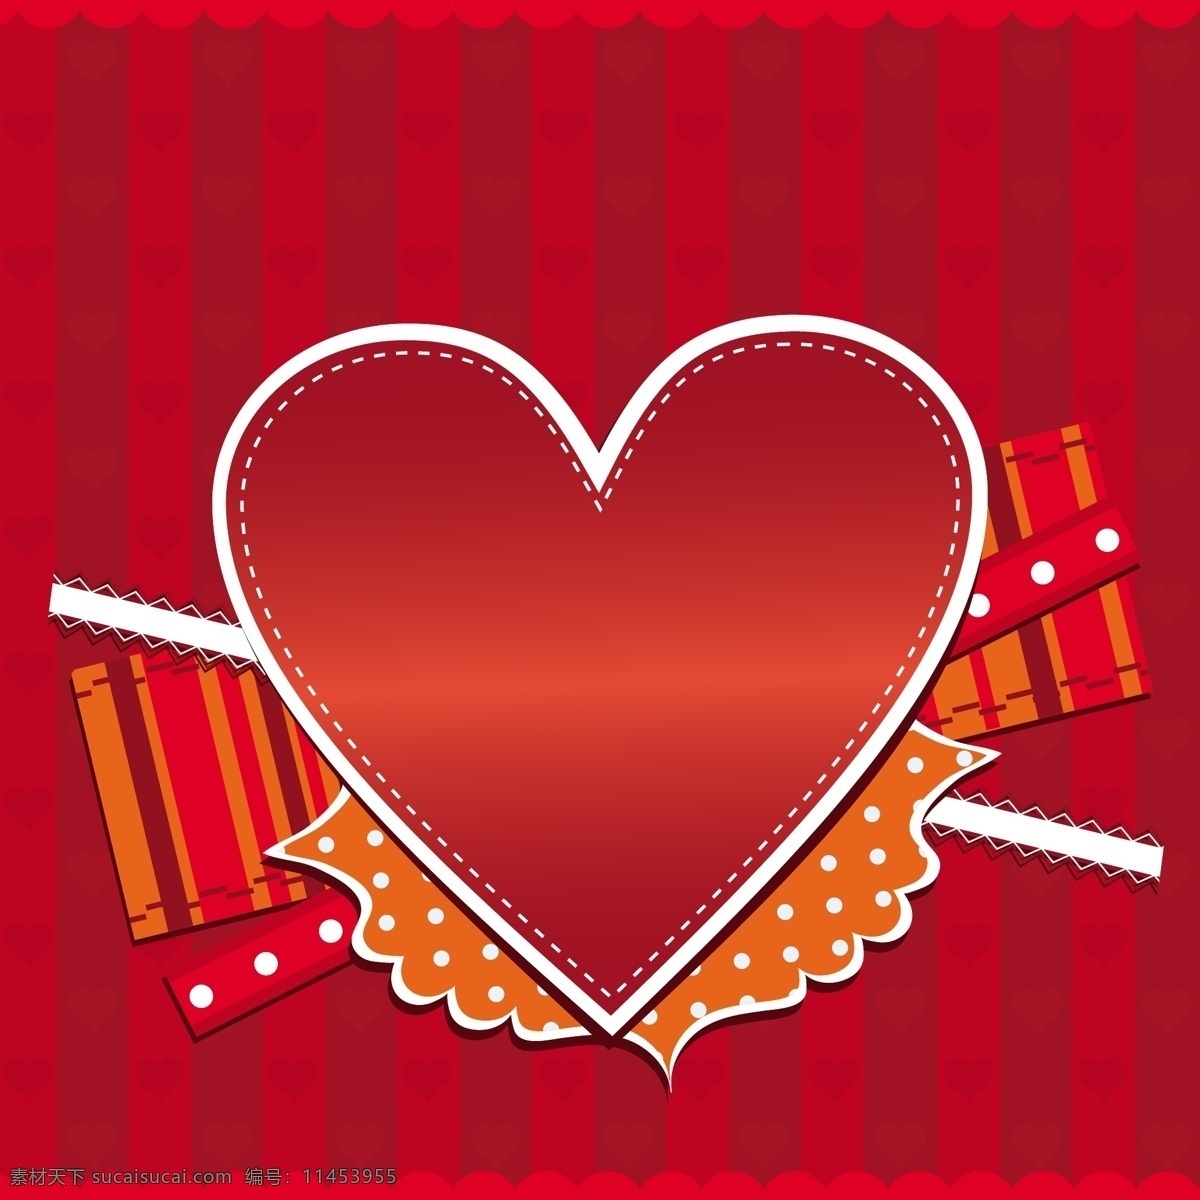 矢量 爱情 心形 背景 标签 贺卡 花纹 浪漫 矢量素材 甜蜜 心型 节日素材 其他节日